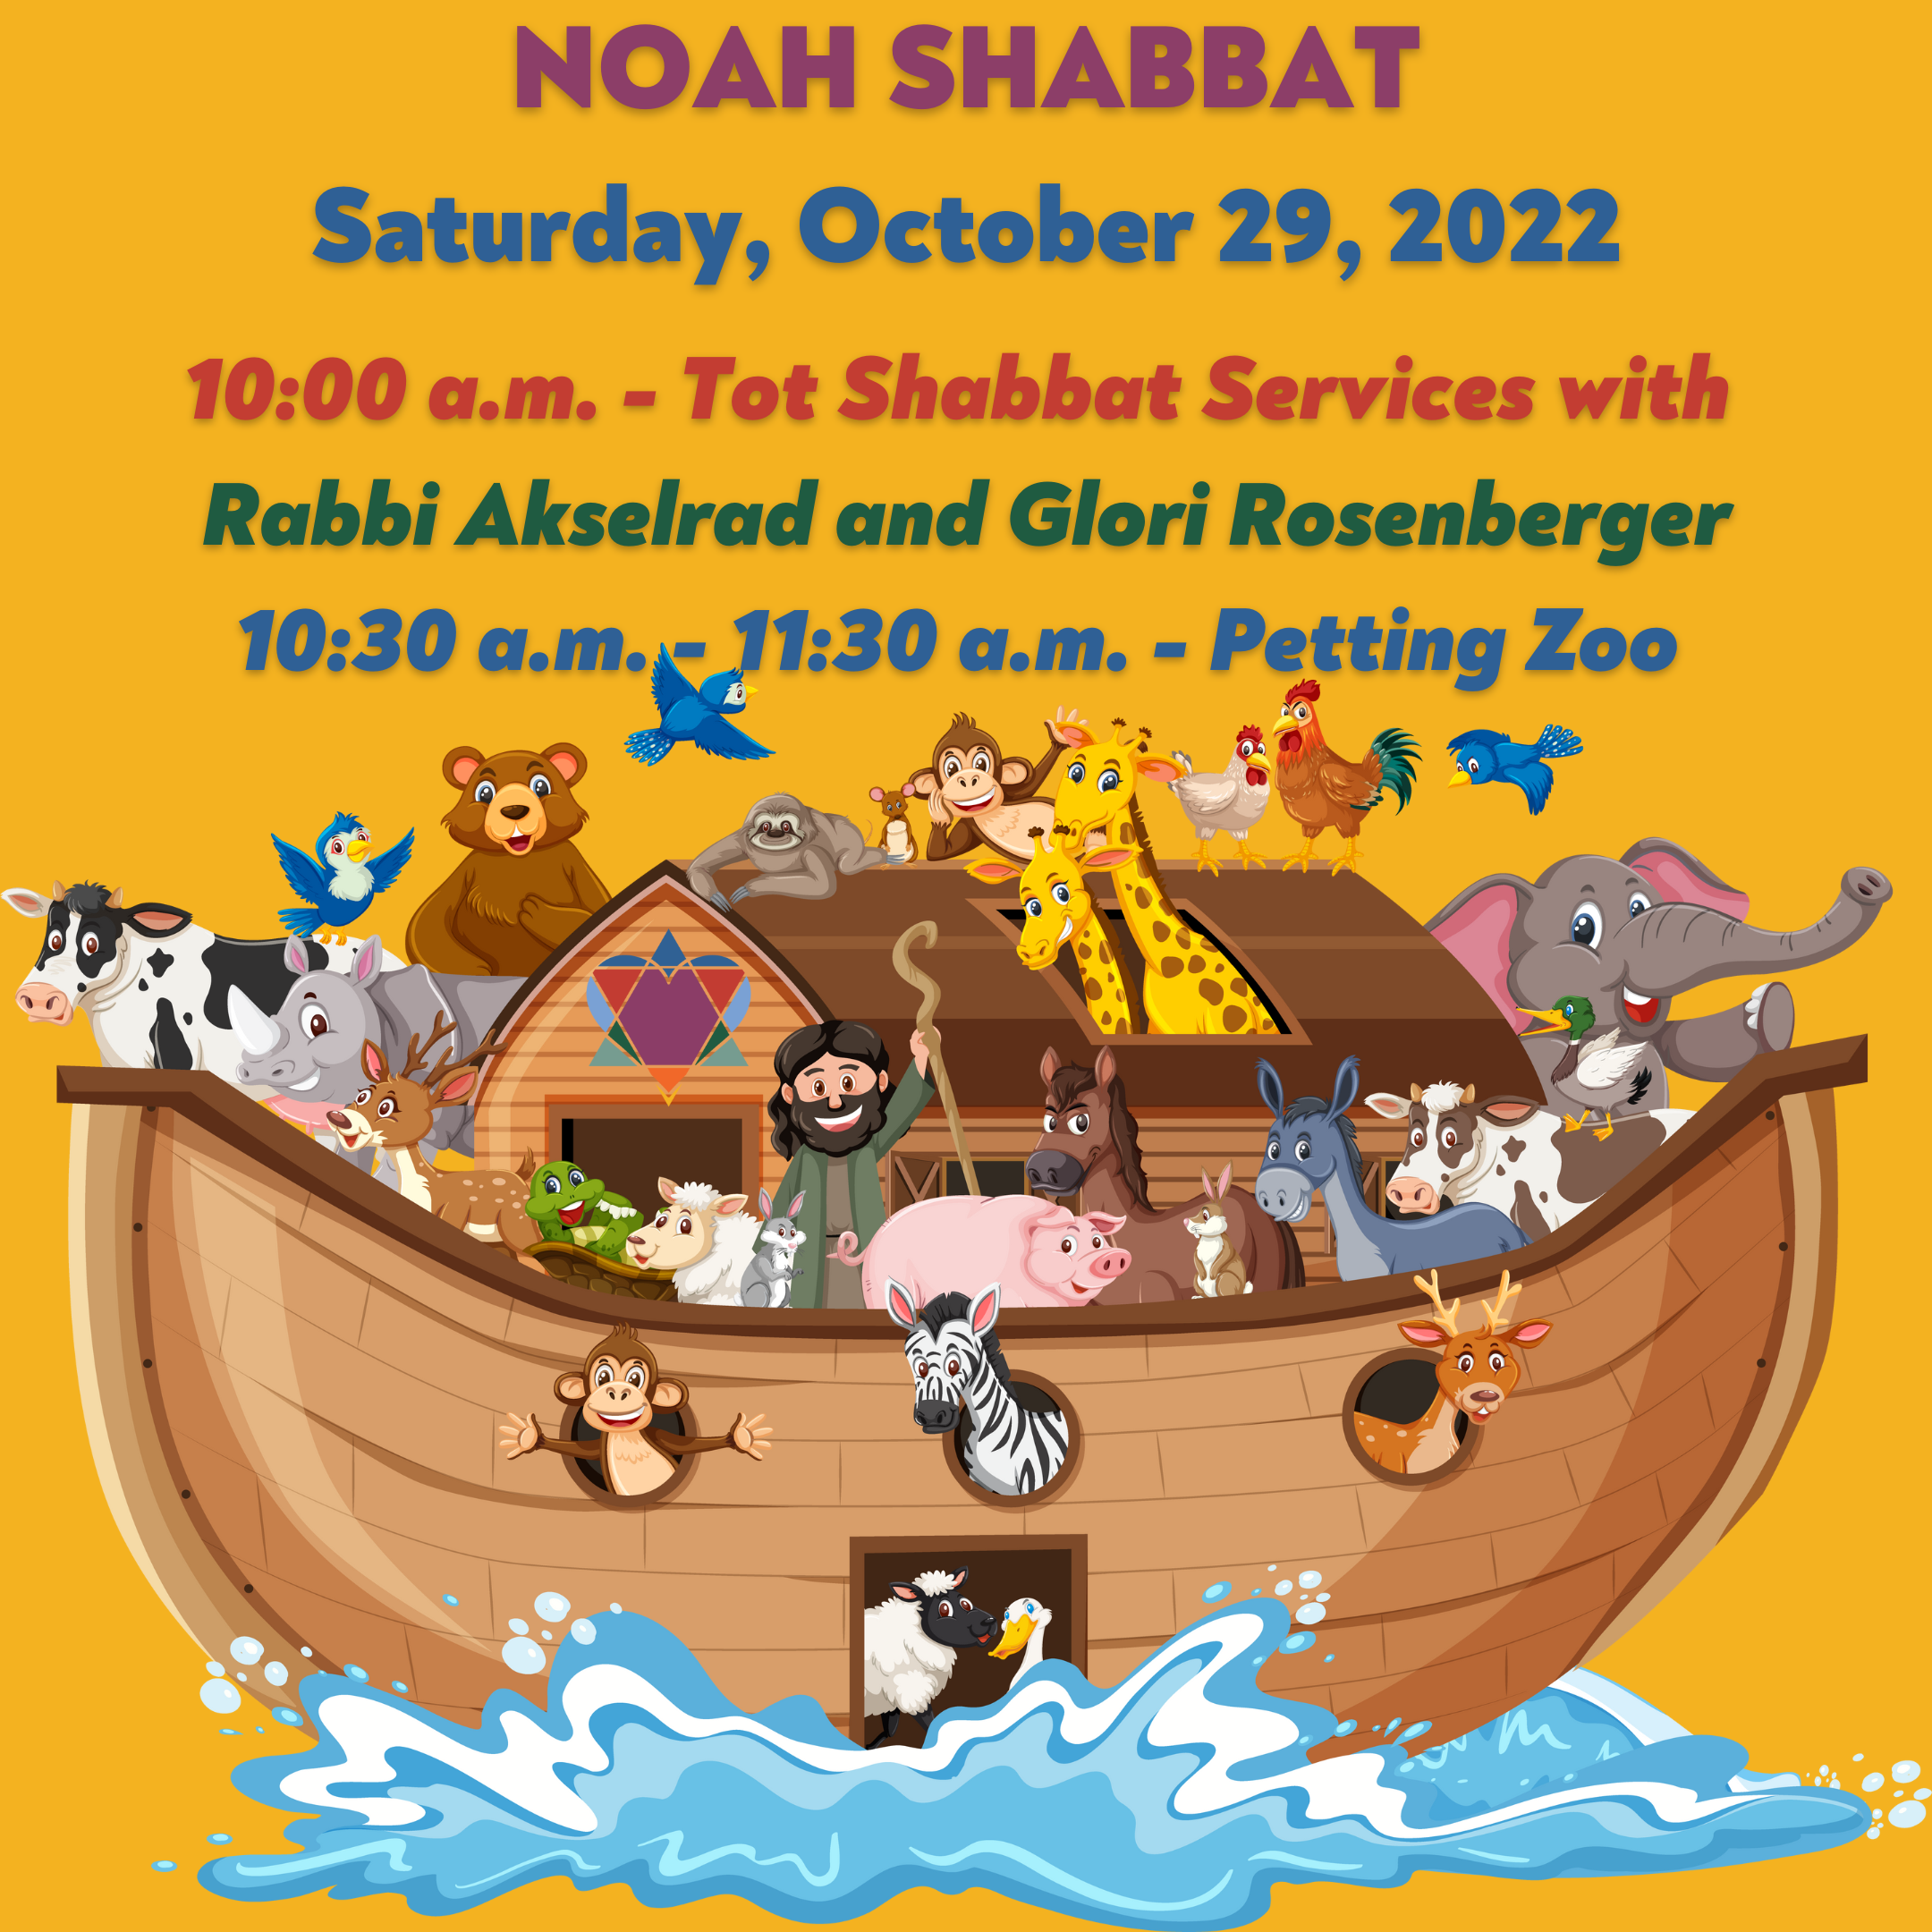 NOAH SHABBAT